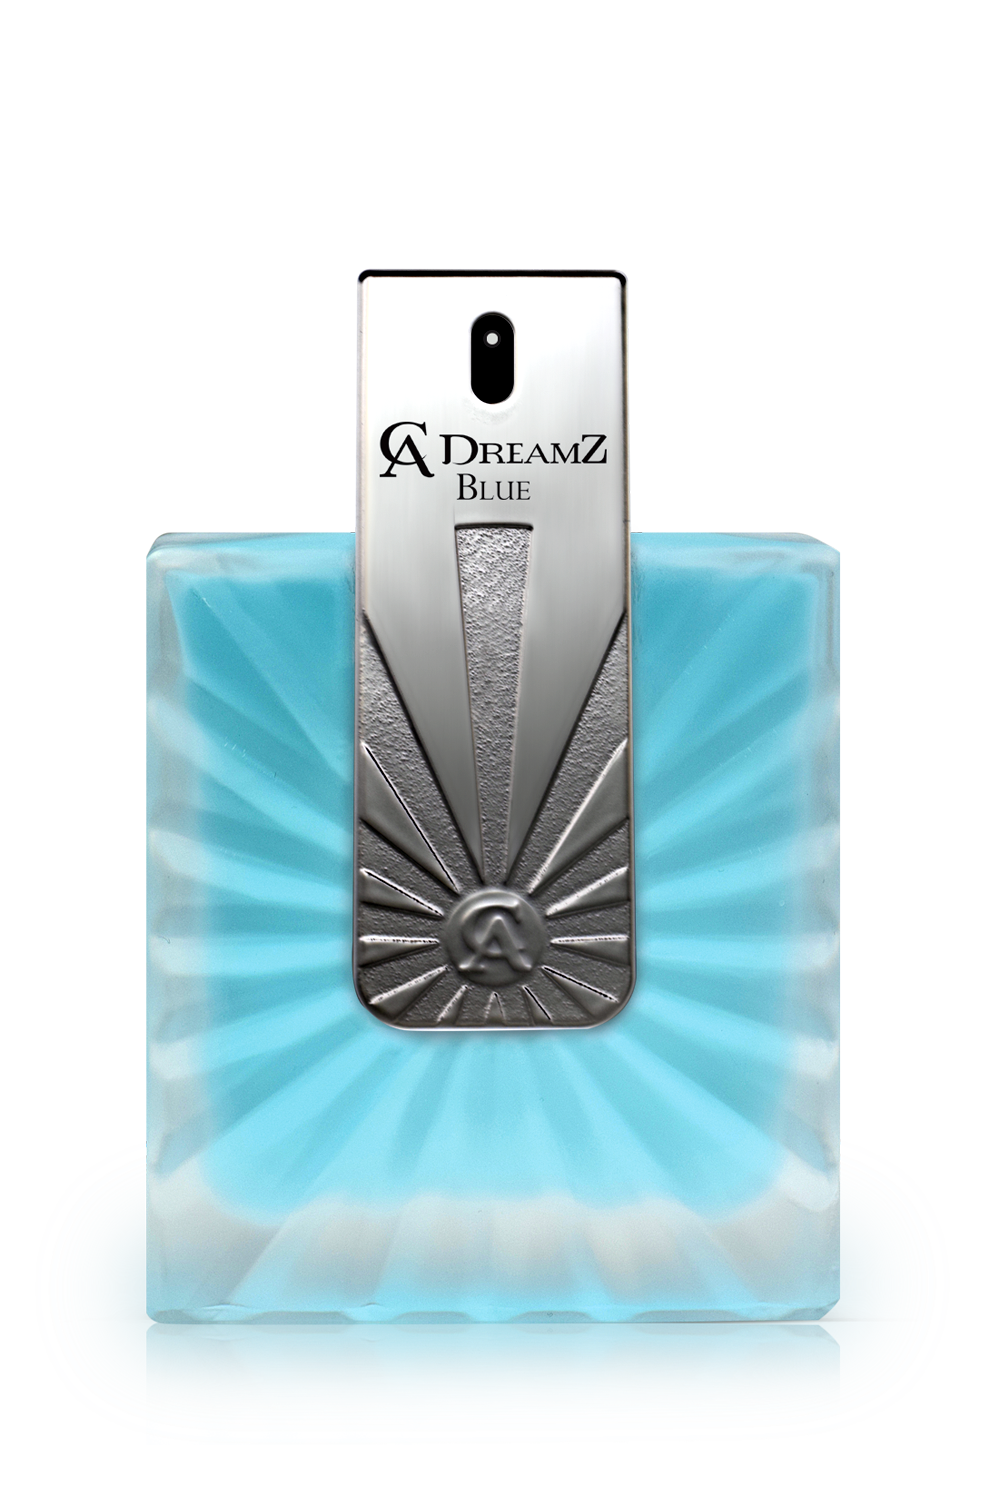 CA dreamz spray perfume